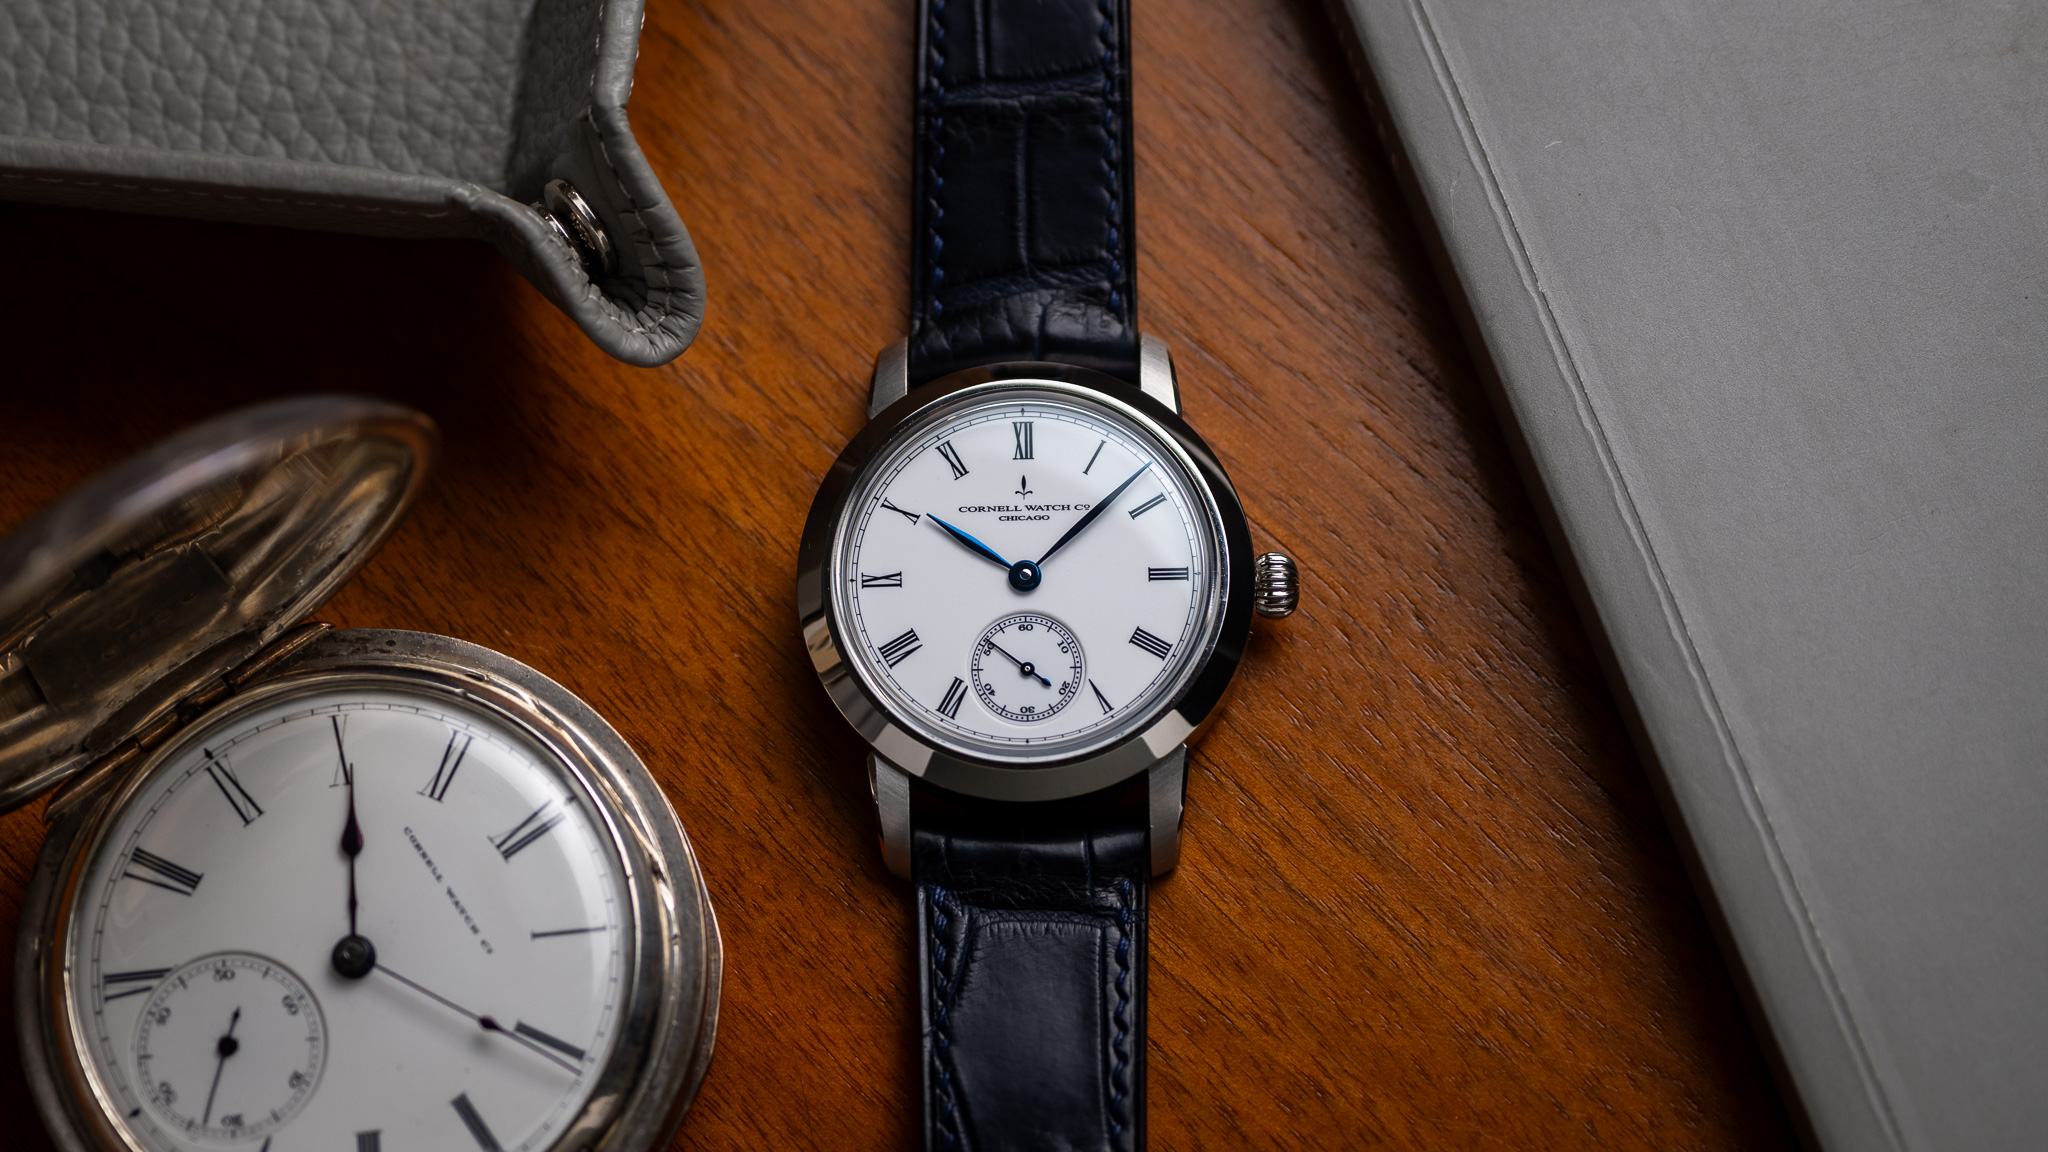 1870年代に活躍した懐中時計ブランド、コーネルが復活